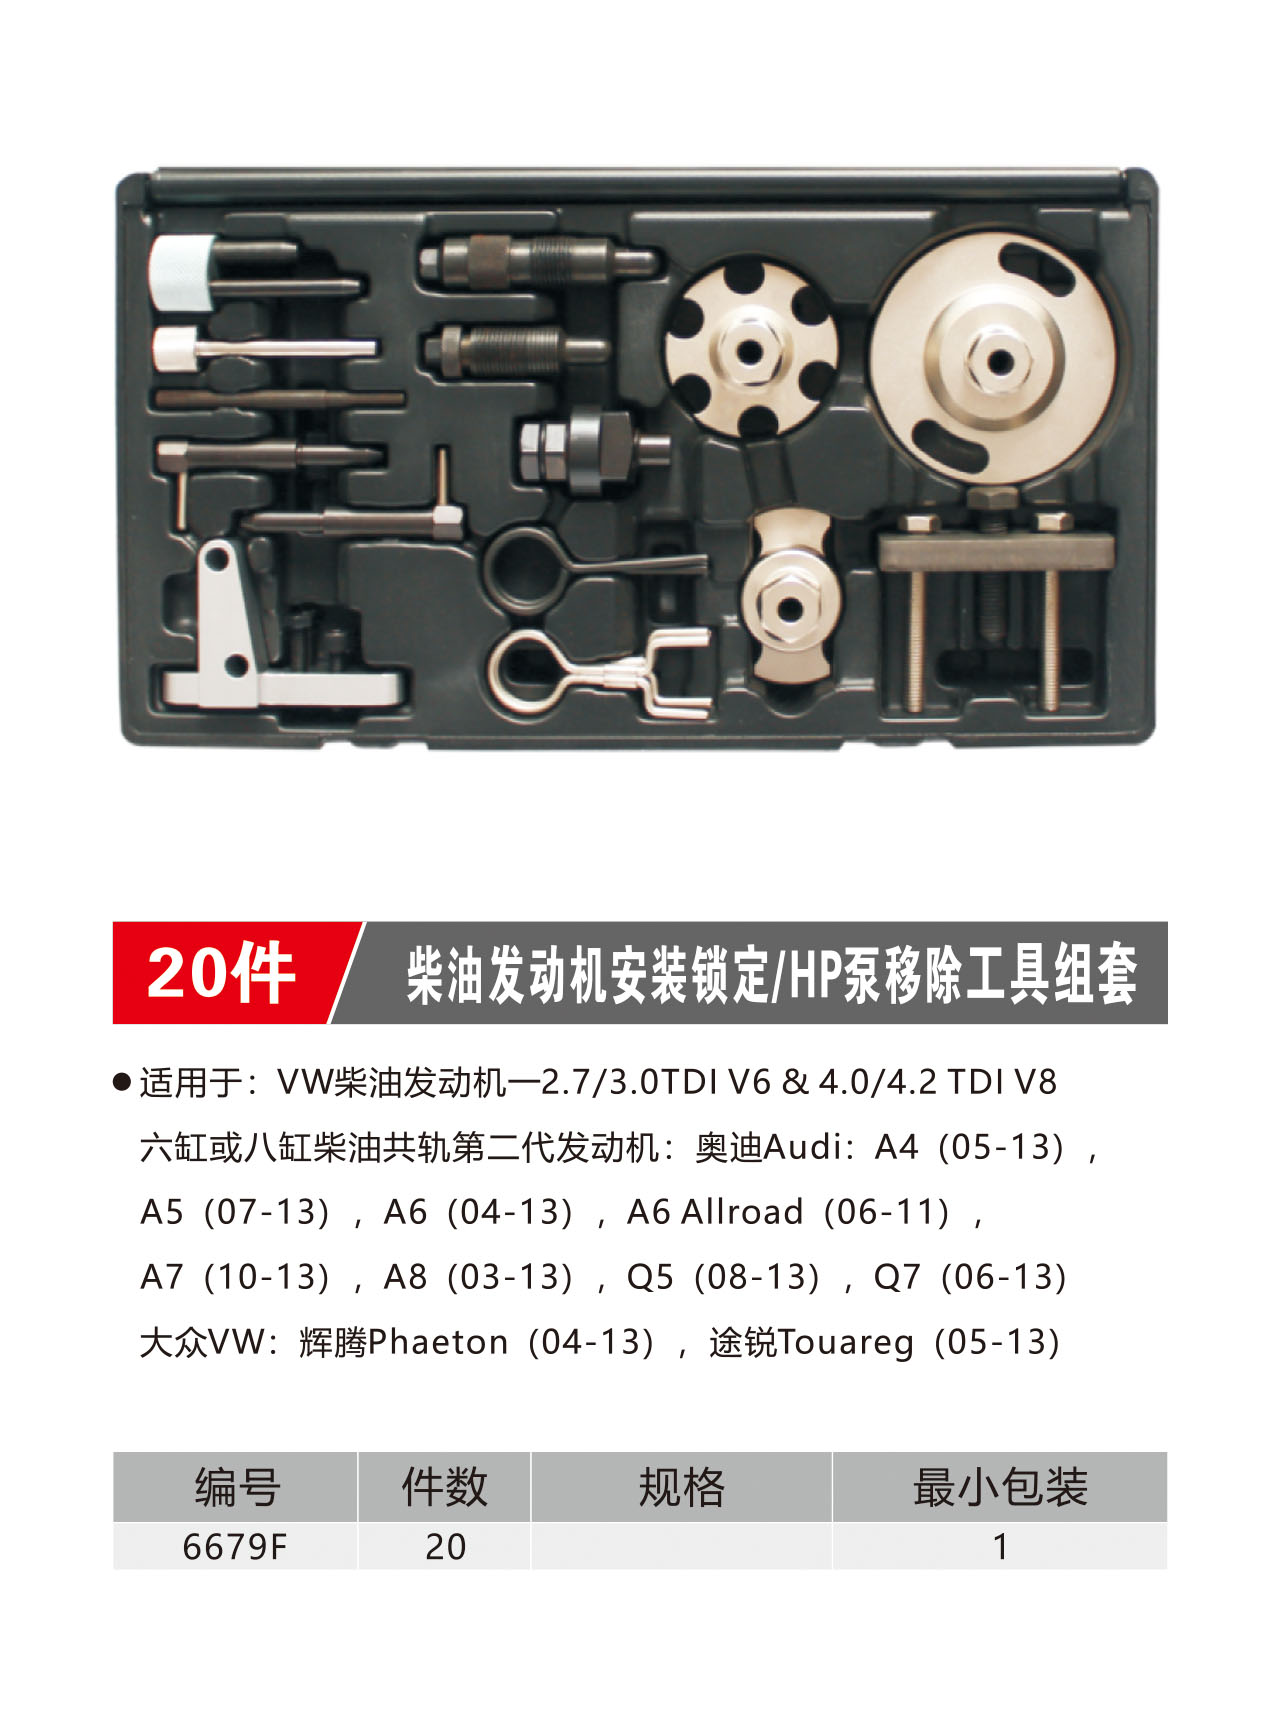 20件柴油发动机安装锁定/HP泵移除工具组套（NO.6679F）